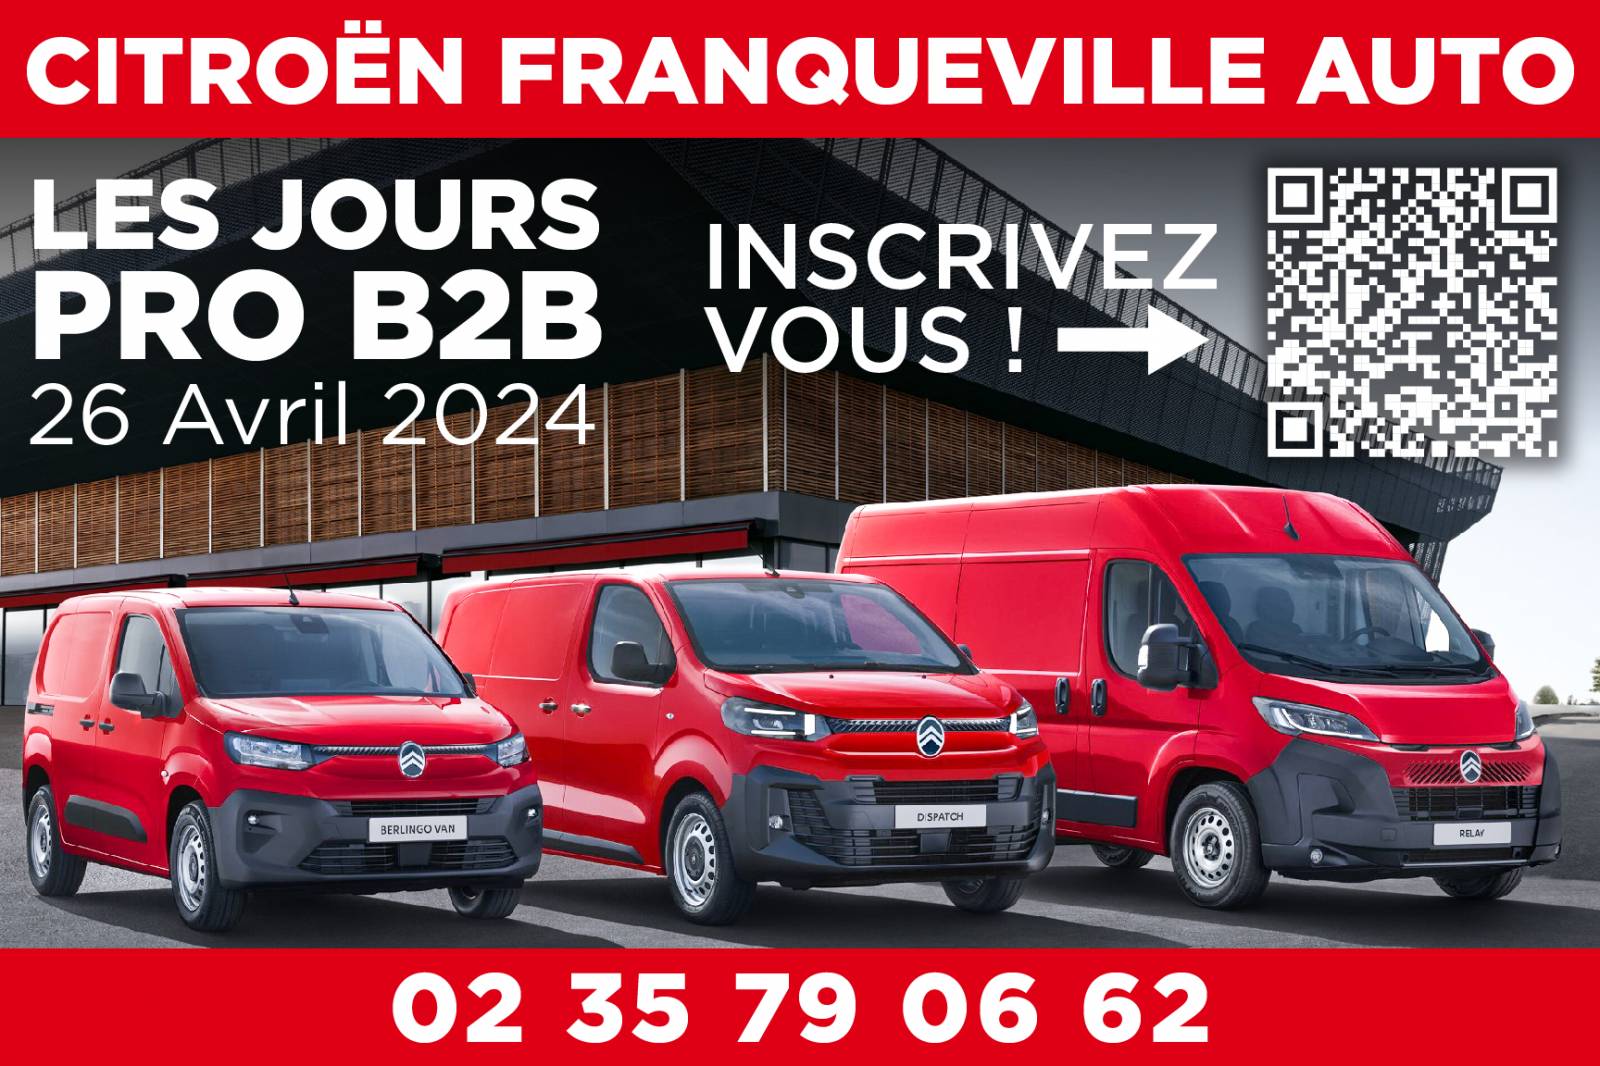 Journée Pro B2B chez Citroën Franqueville Auto : Découverte des Utilitaires avec Offres Spéciales